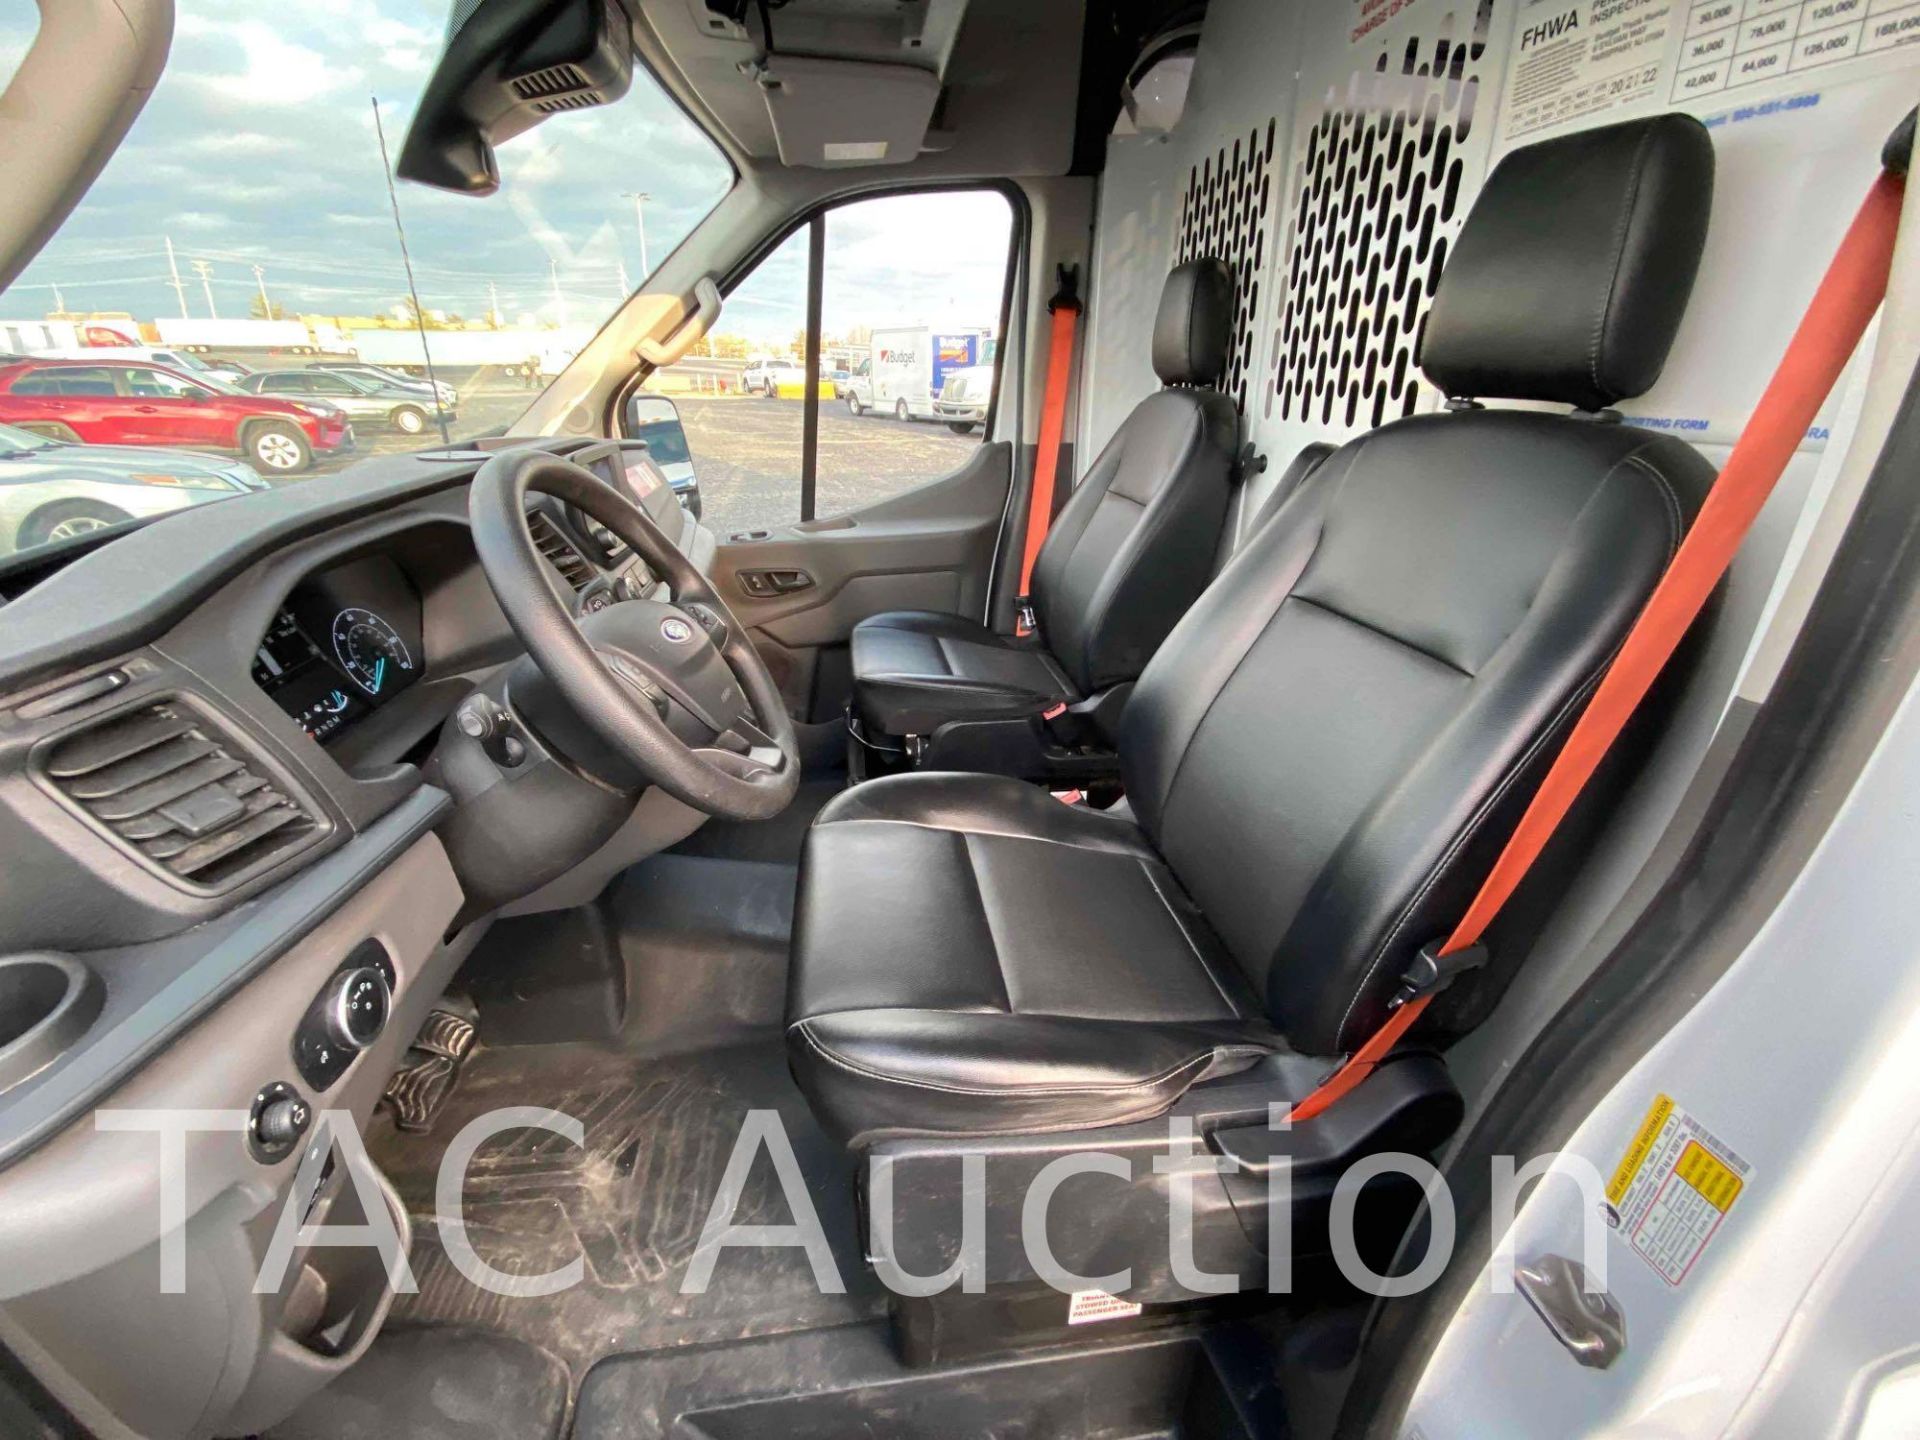 2021 Ford Transit 150 Cargo Van - Image 18 of 39